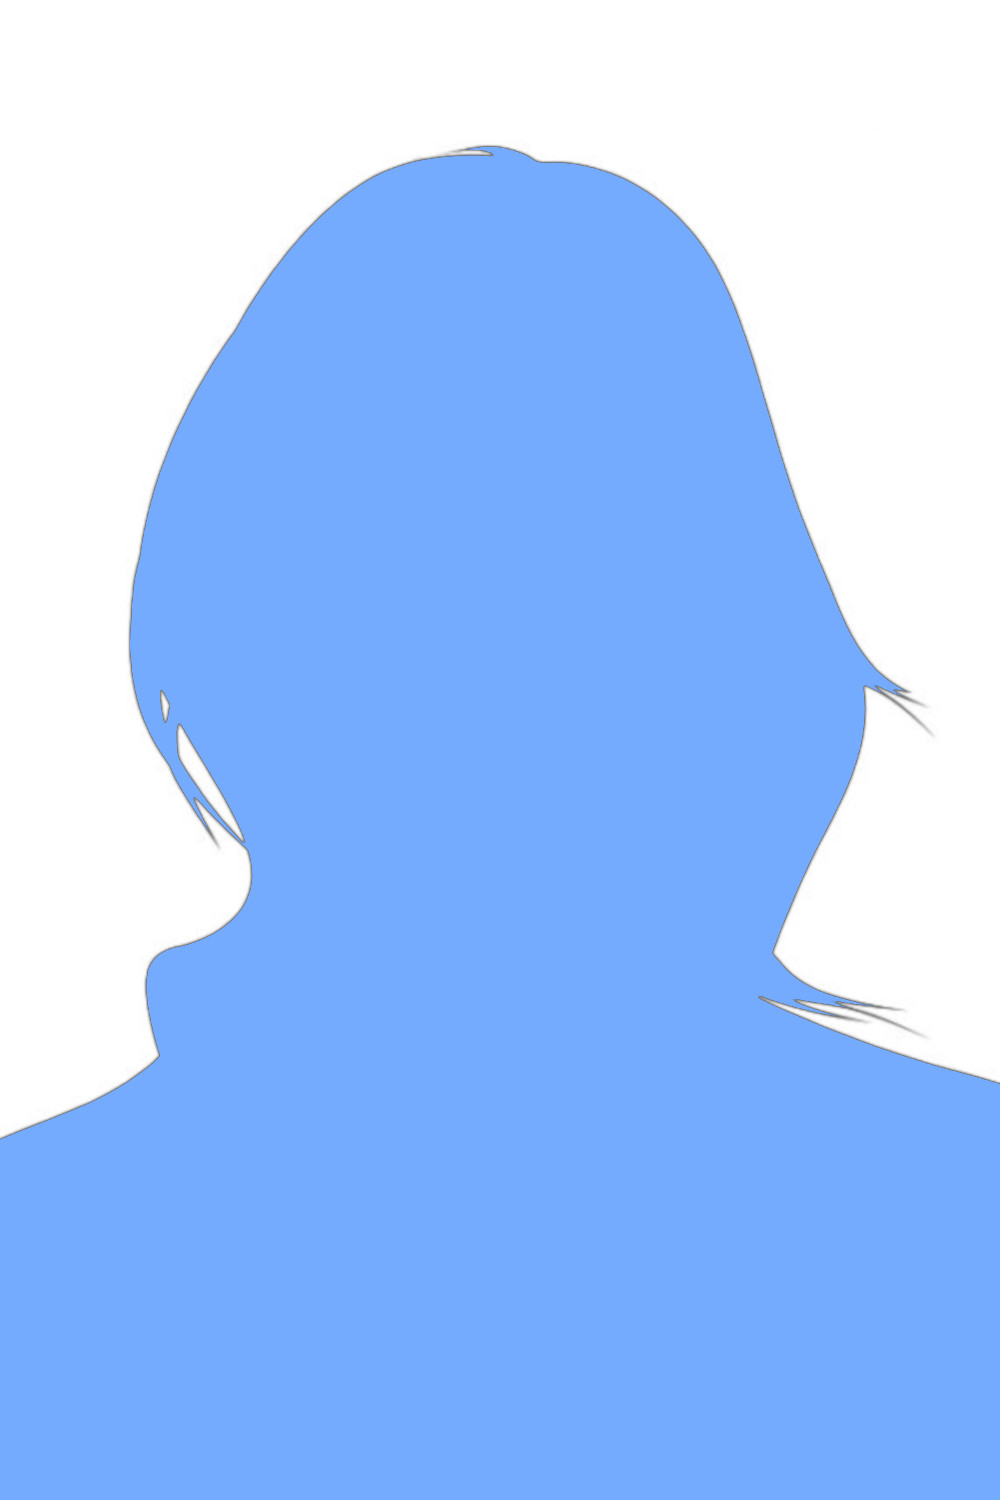 female-silhouette